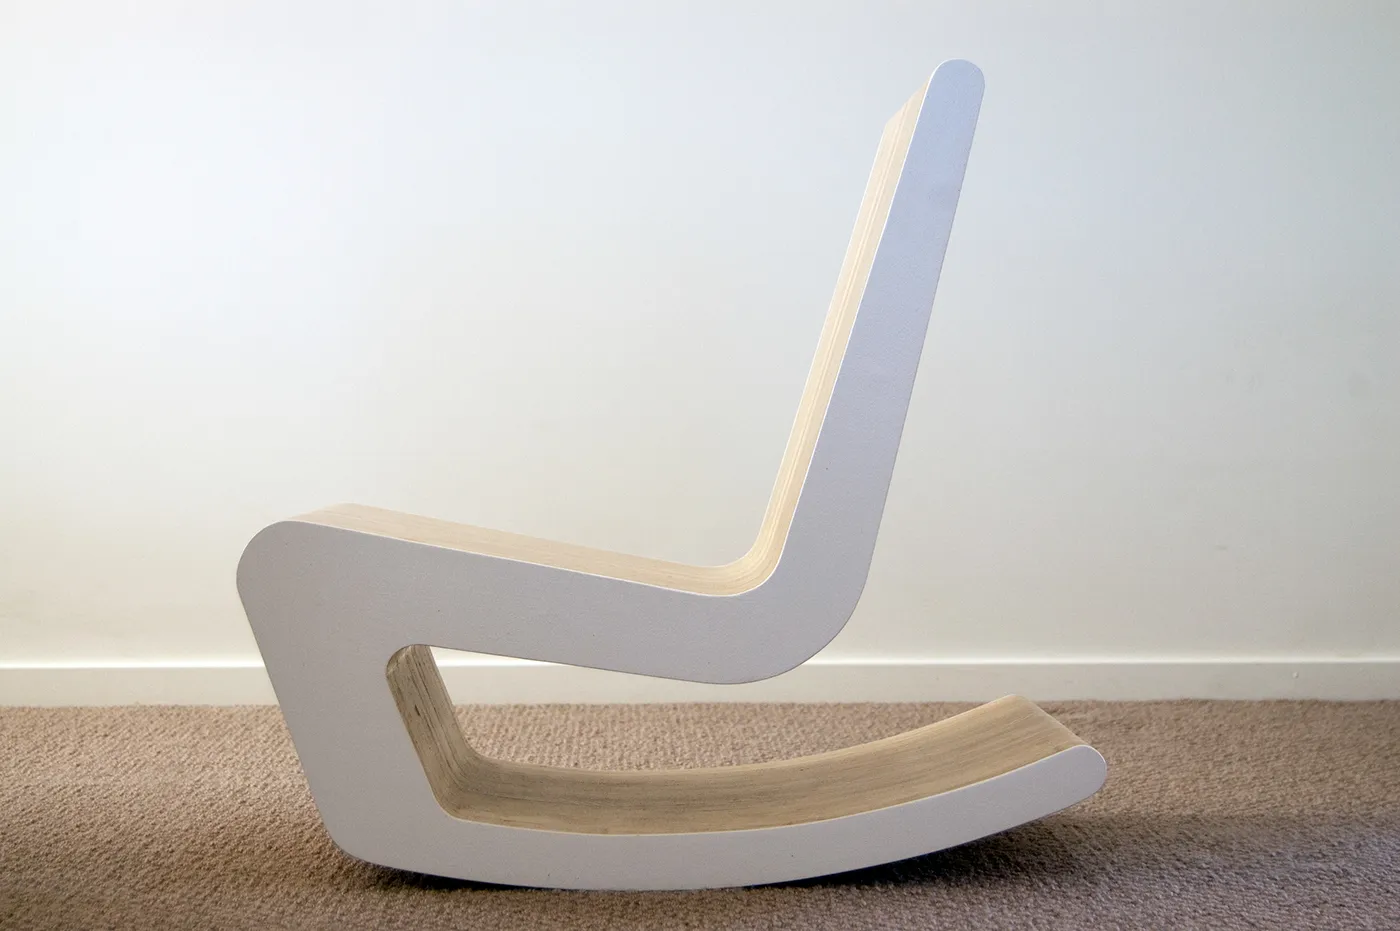 Еще один вариант 3D-кресла, но собранного из деталей одинаковой формы